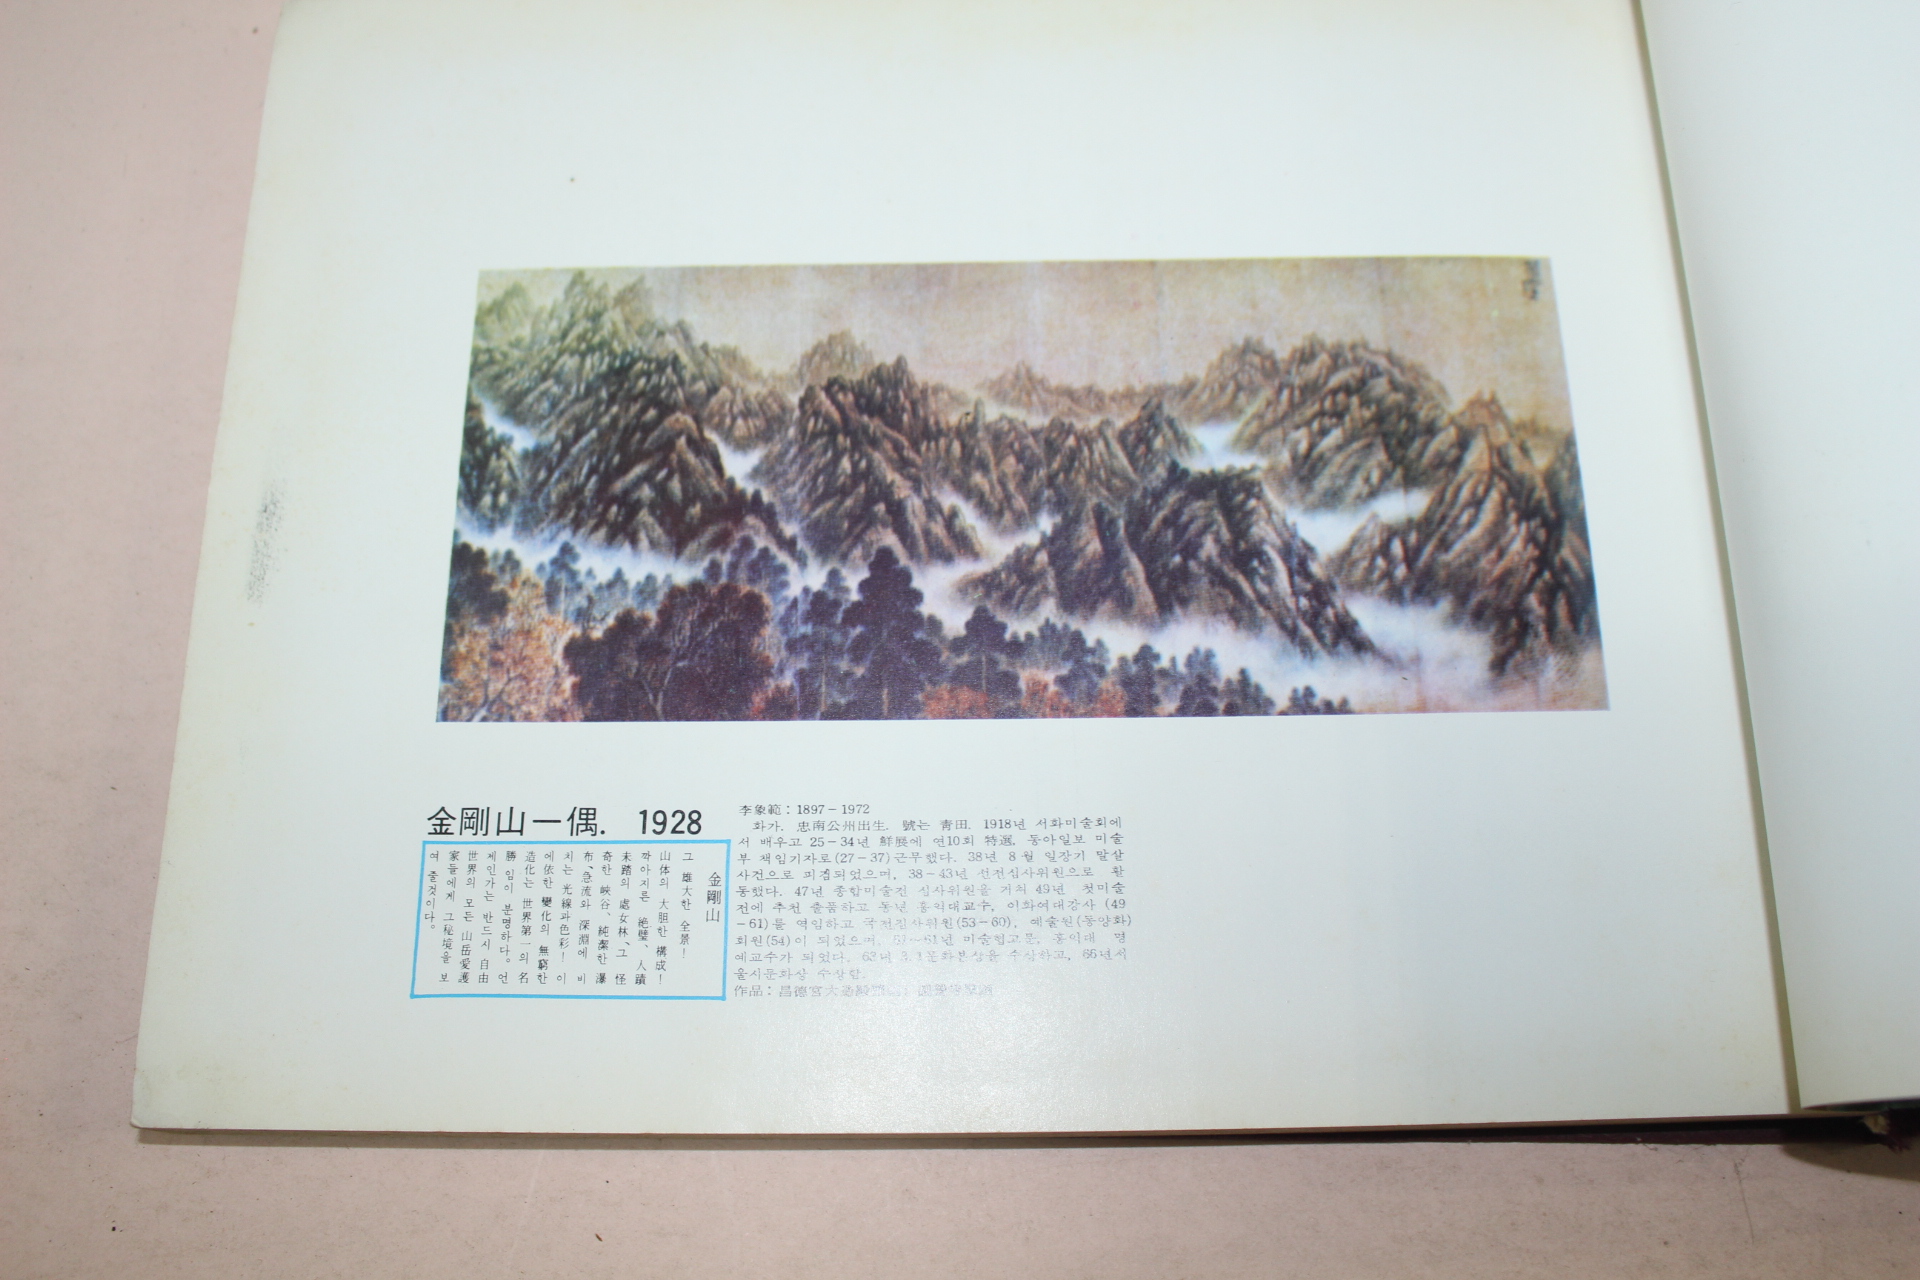 1976년 세계적명산 일만이천봉 금강산(金剛山) 화보집